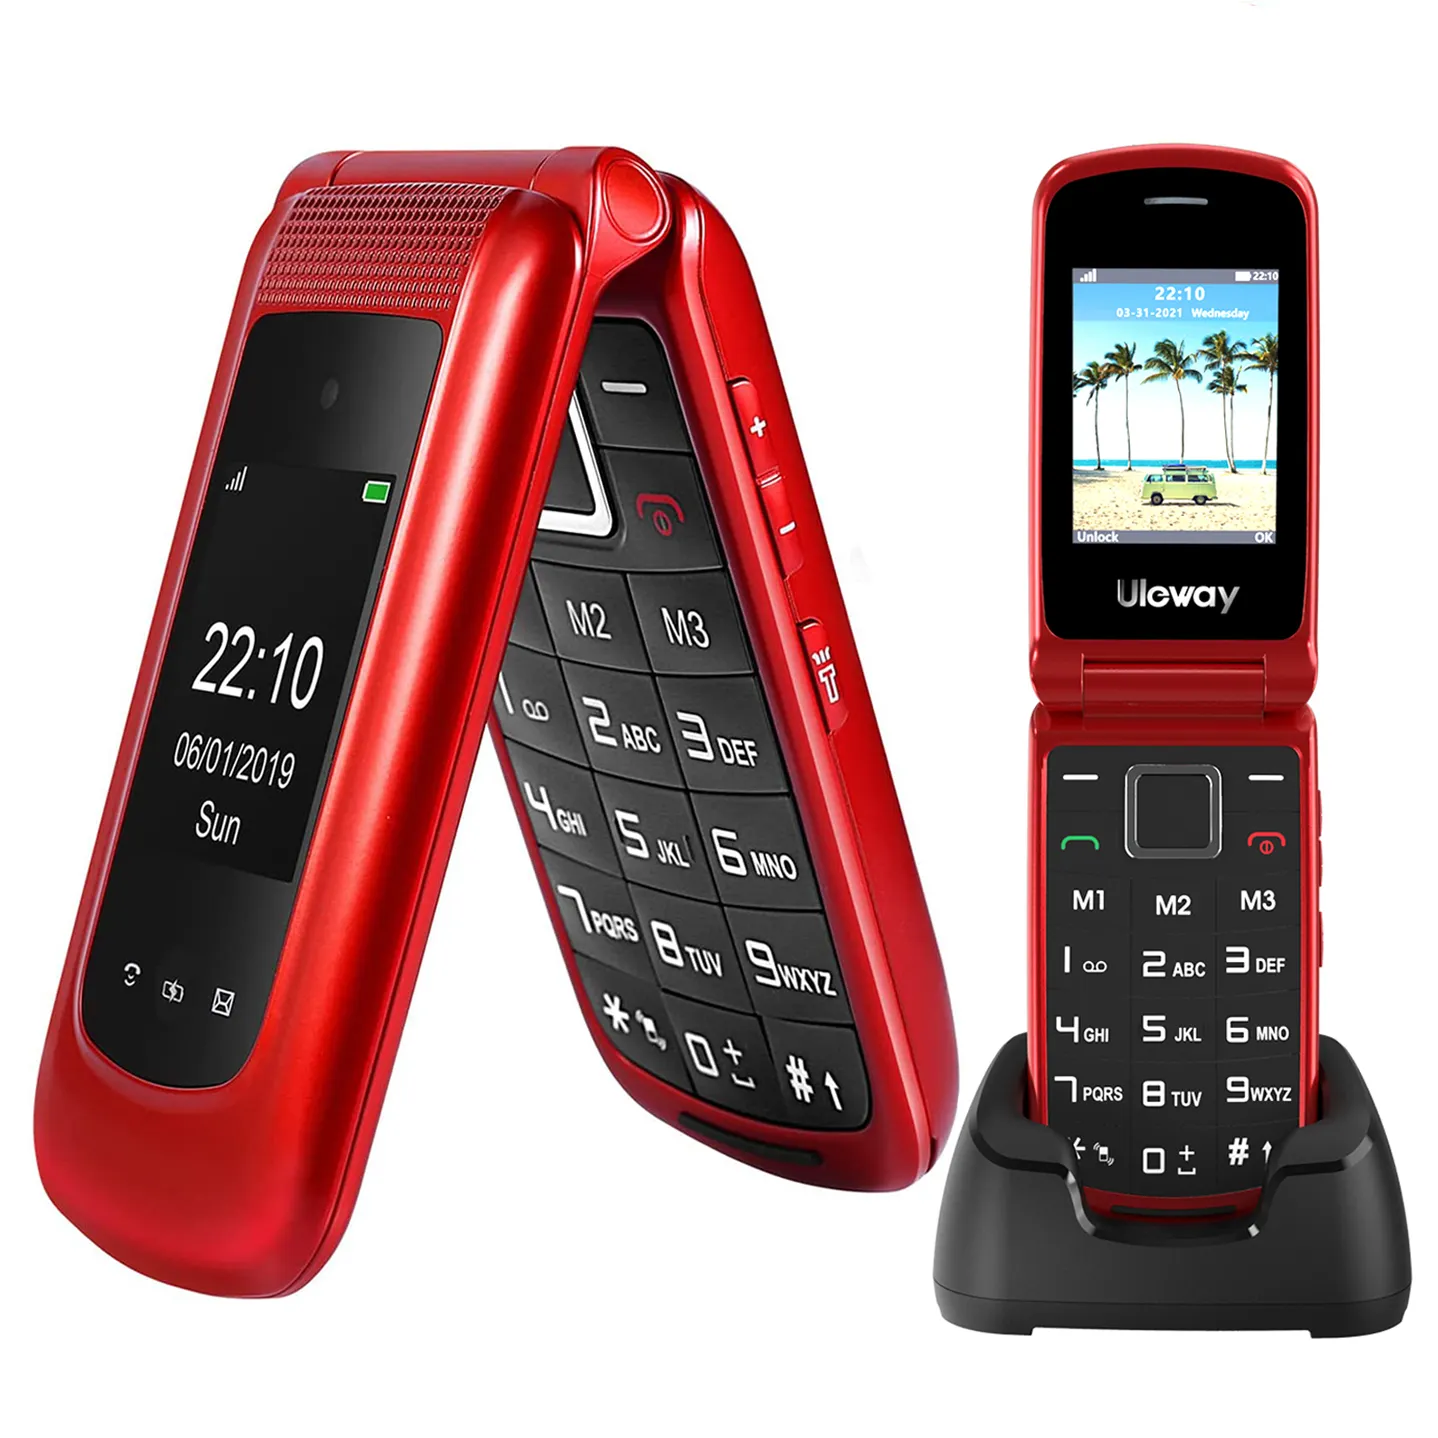 Usine de haute qualité déverrouillé 4g Bar téléphone portable Flip & 1.77 + 2.4 ''double affichage 4g téléphone portable senior sans contrat-rouge